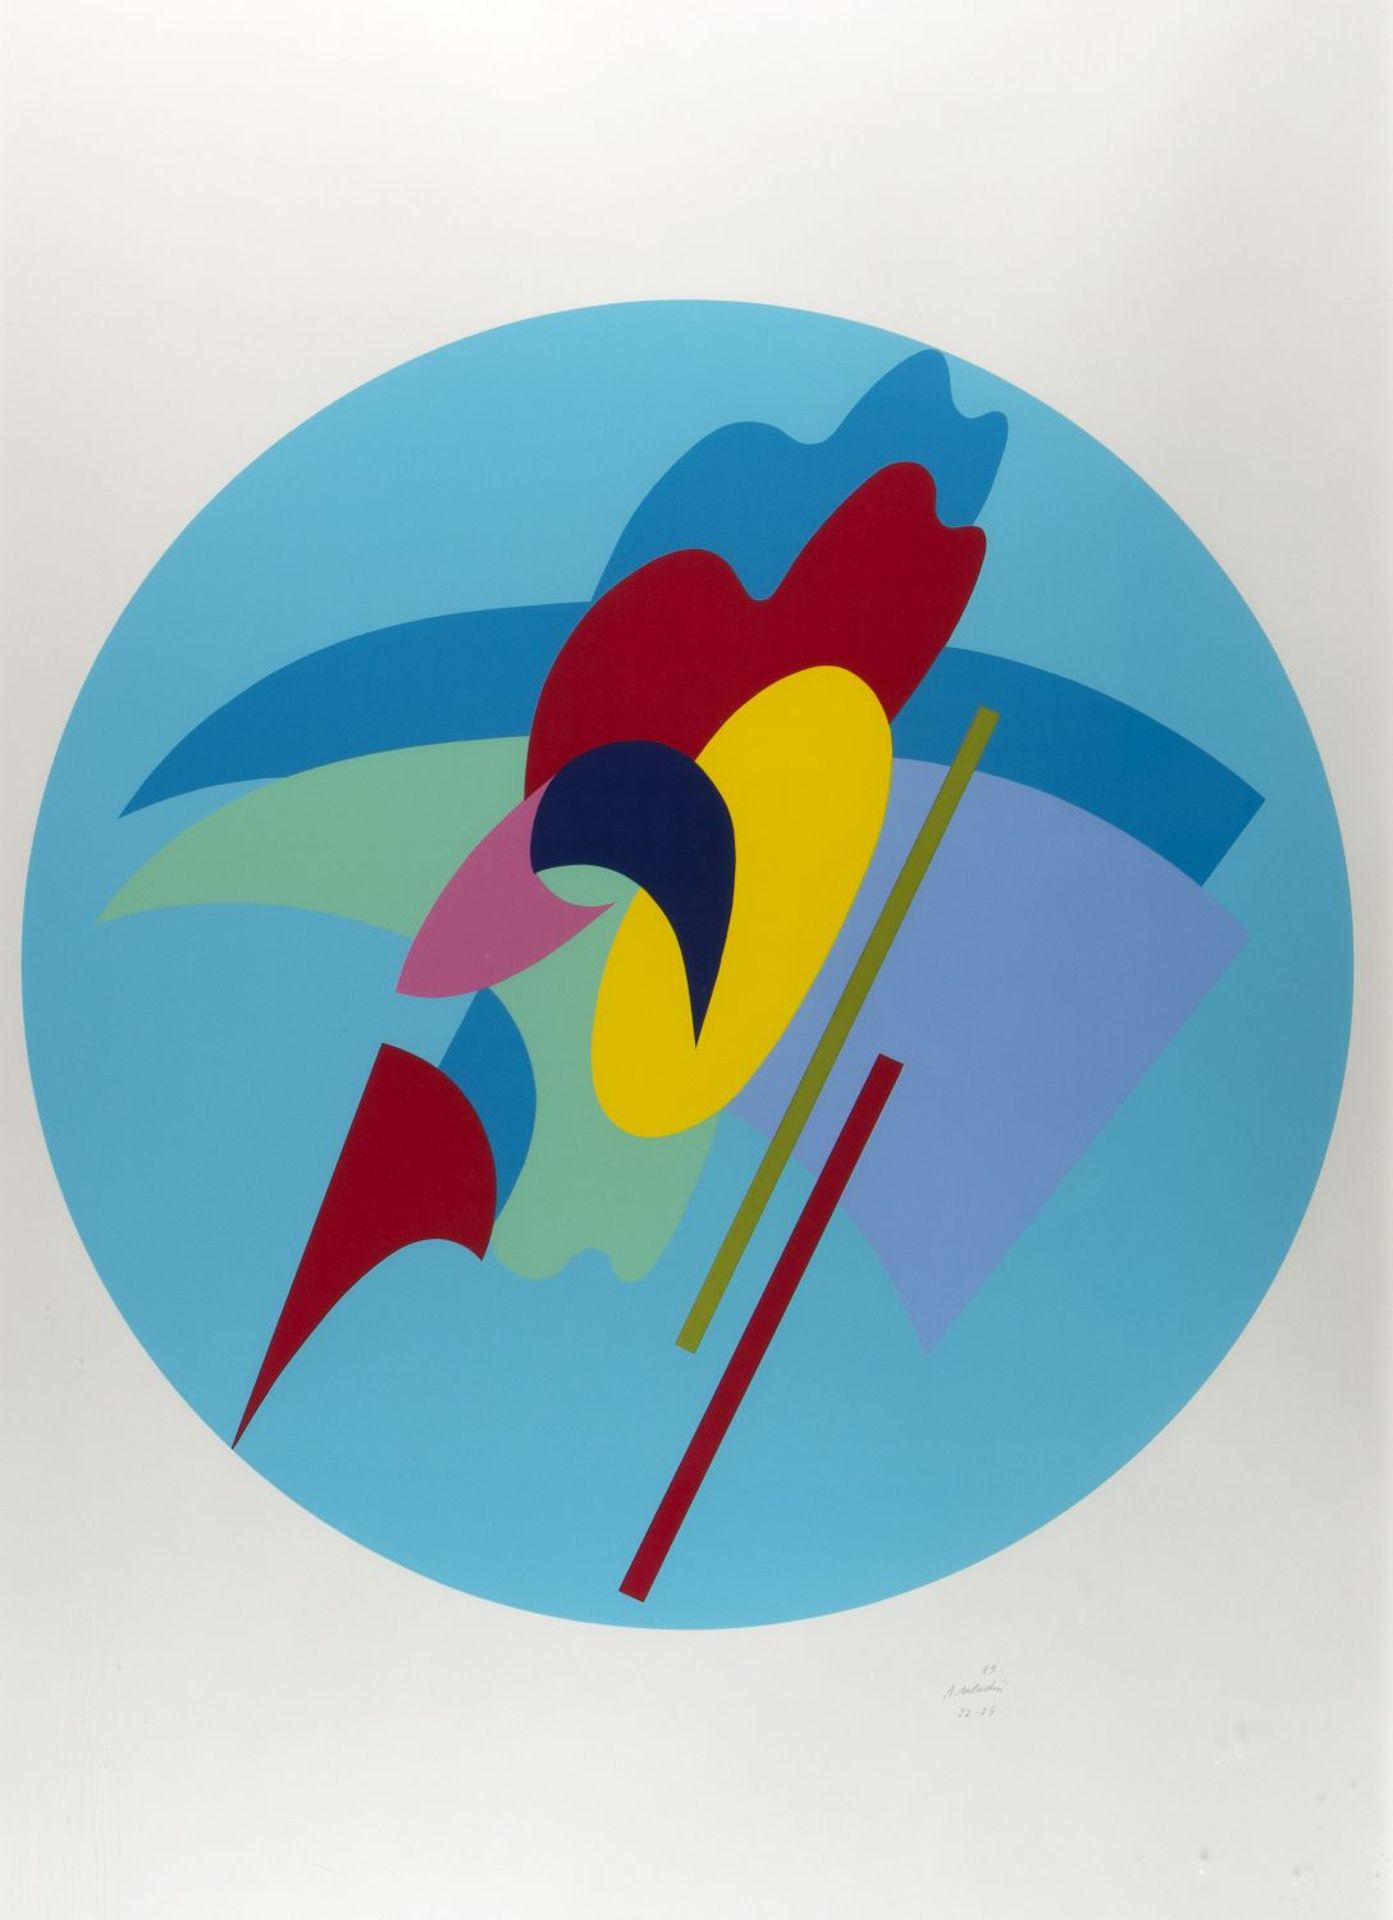 Mendini, Alessandro. 1931 - Mailand - 2019 Abstrakte Formen in einem Kreis. Farbserigraphie. Sign. u